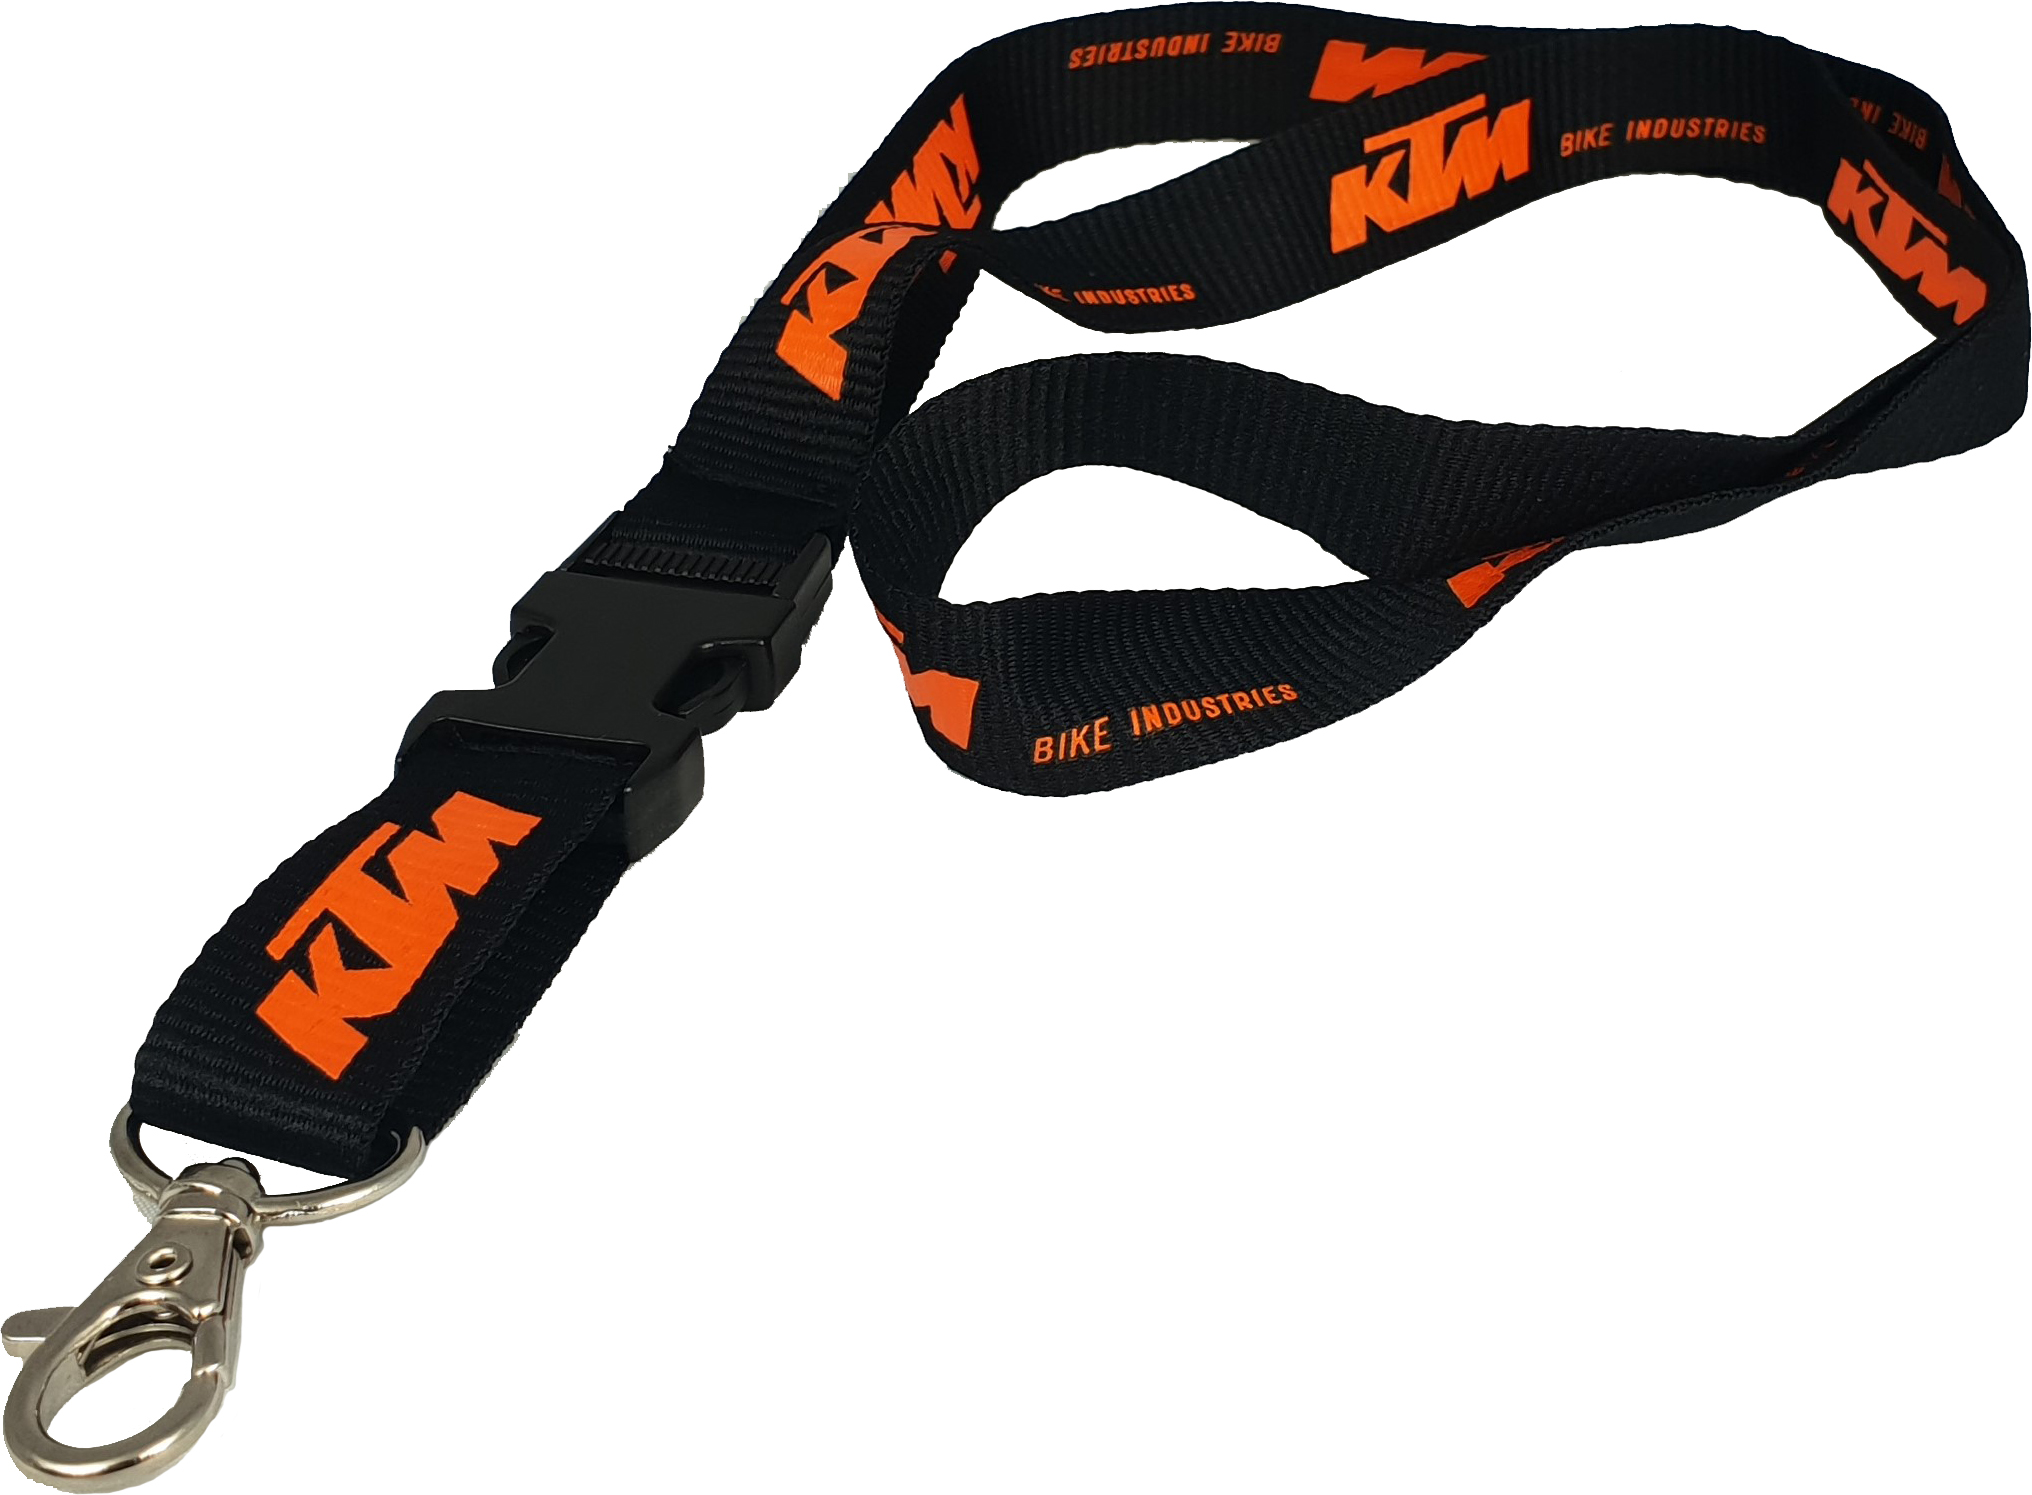 KTM - Tour du cou porte-clés